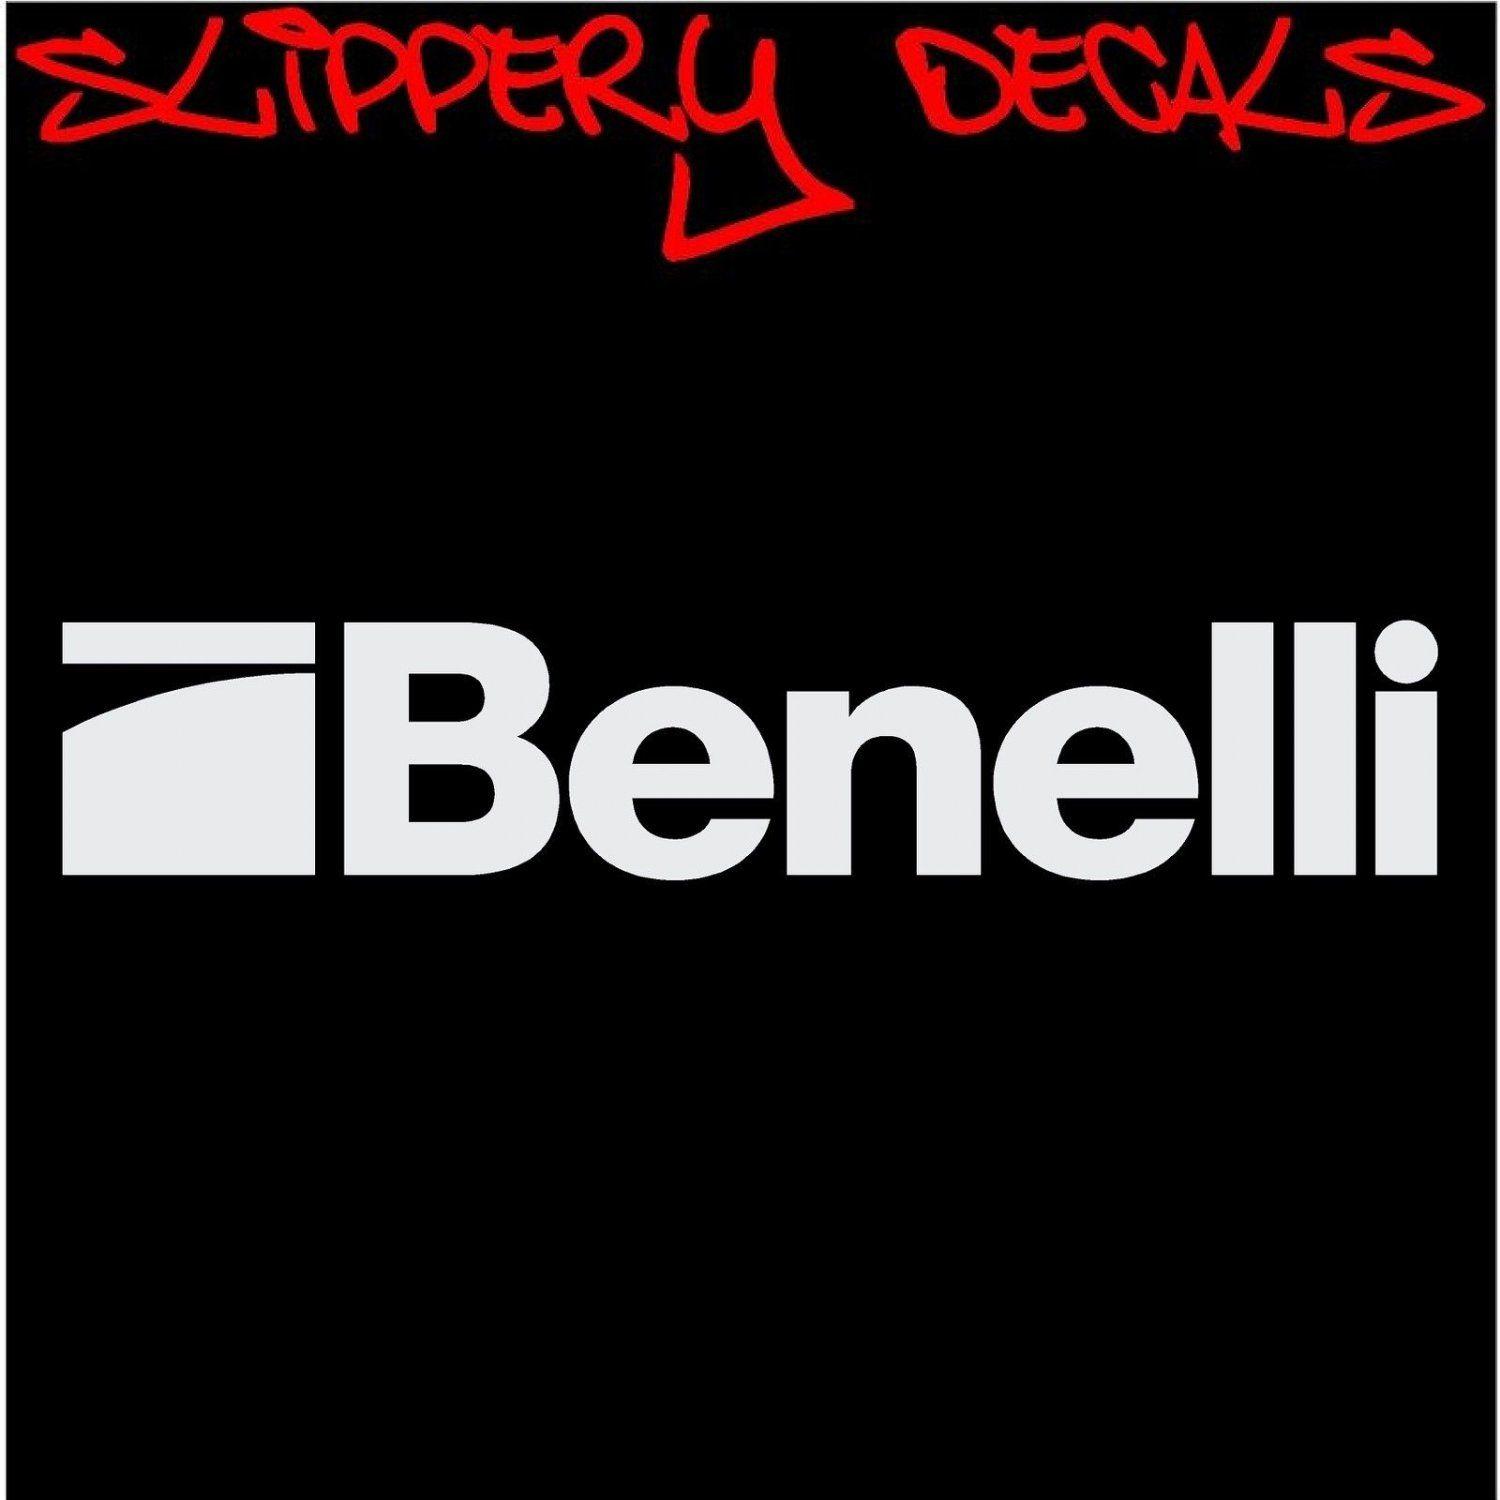 Benelli Firearms Logo - Benelli Firearm Logo 5 Decal for Car, Window, Laptop, iPad, Tablets